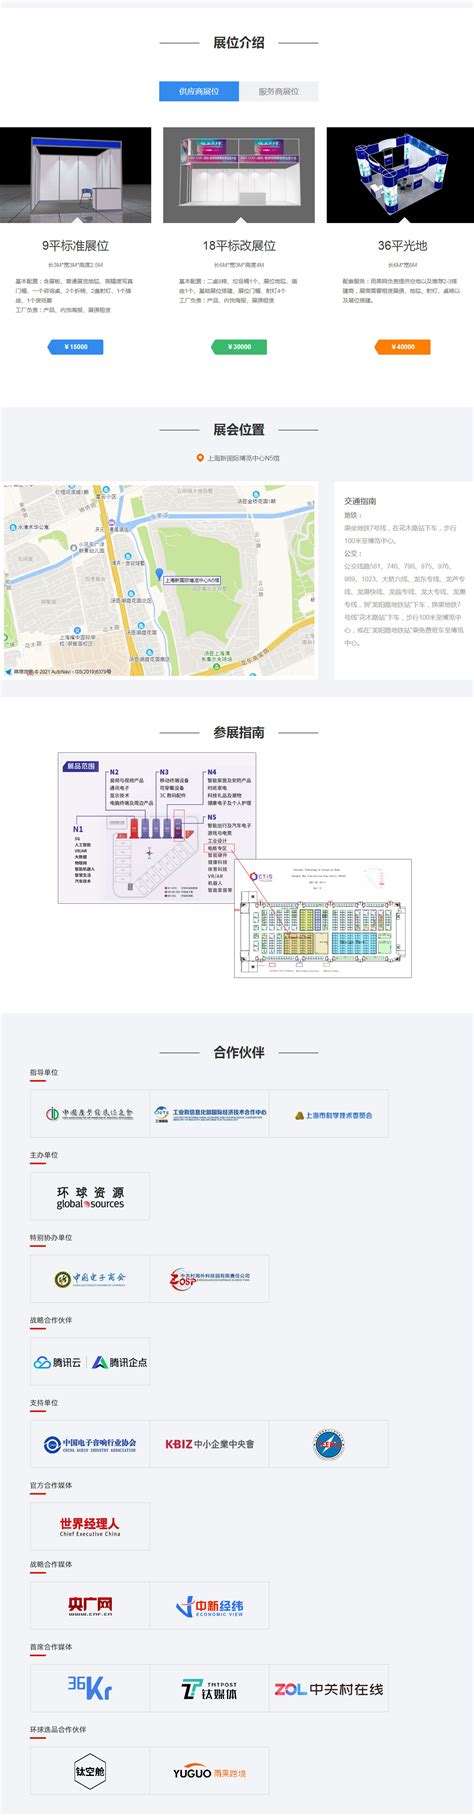 【专题】2017年度中国城市跨境电商发展报告——>网经社 网络经济服务平台 电子商务研究中心